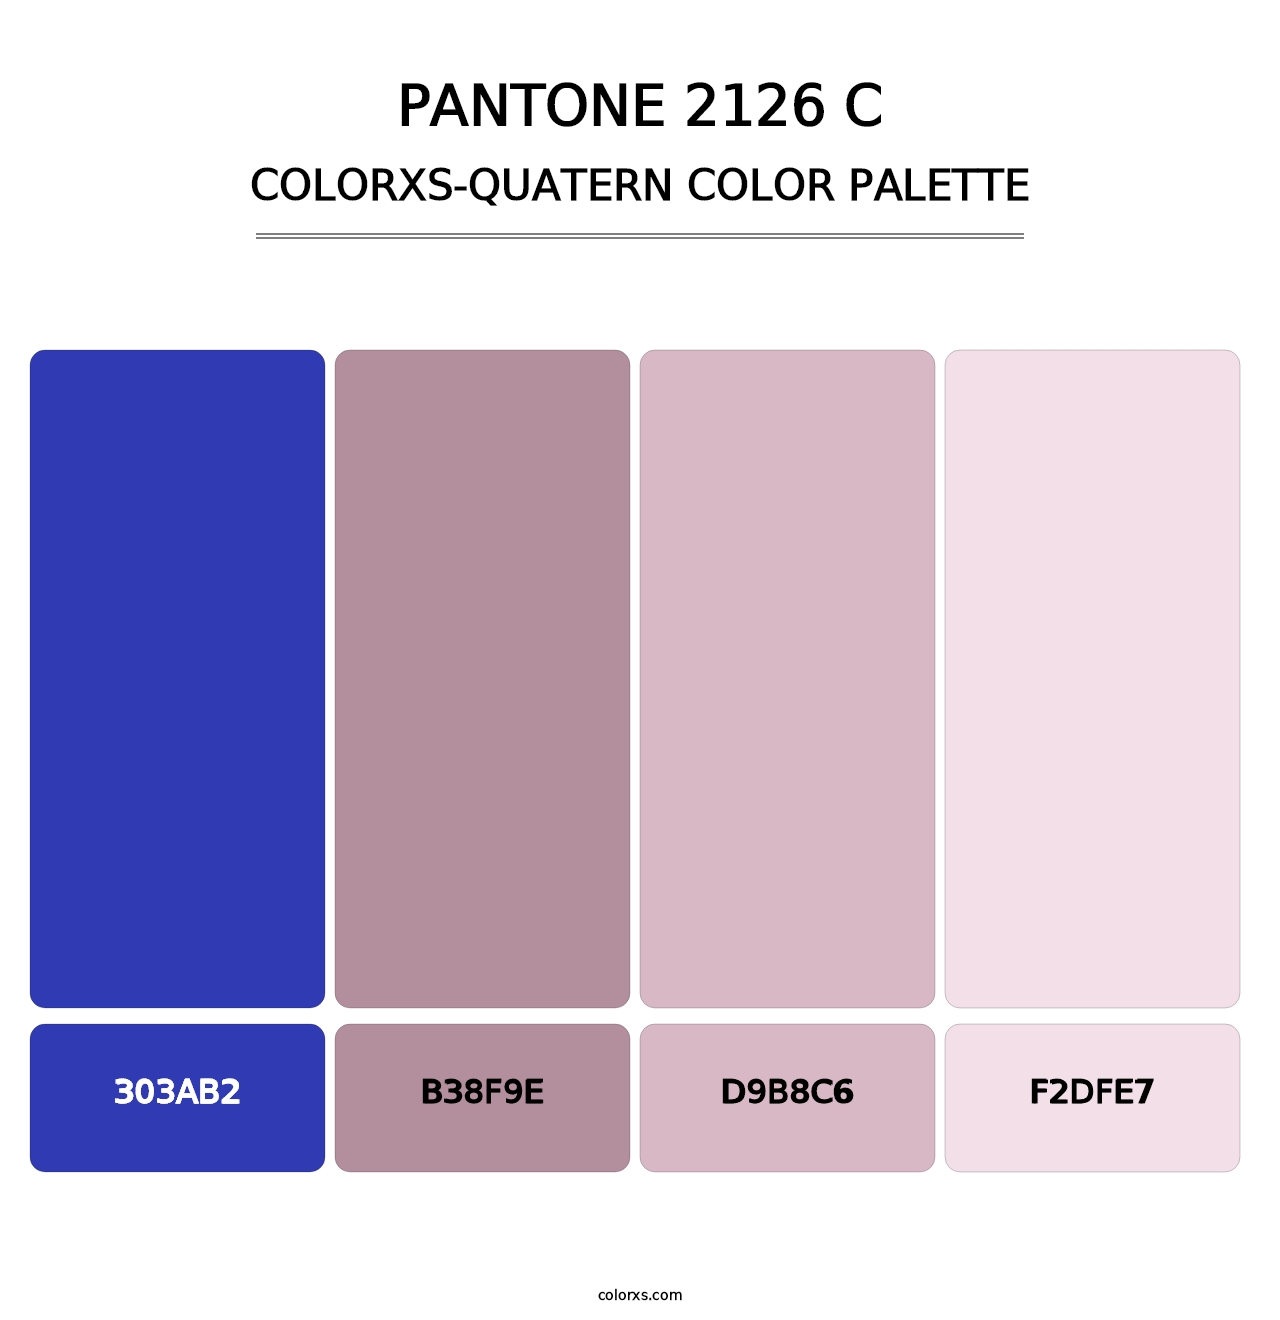 PANTONE 2126 C - Colorxs Quatern Palette